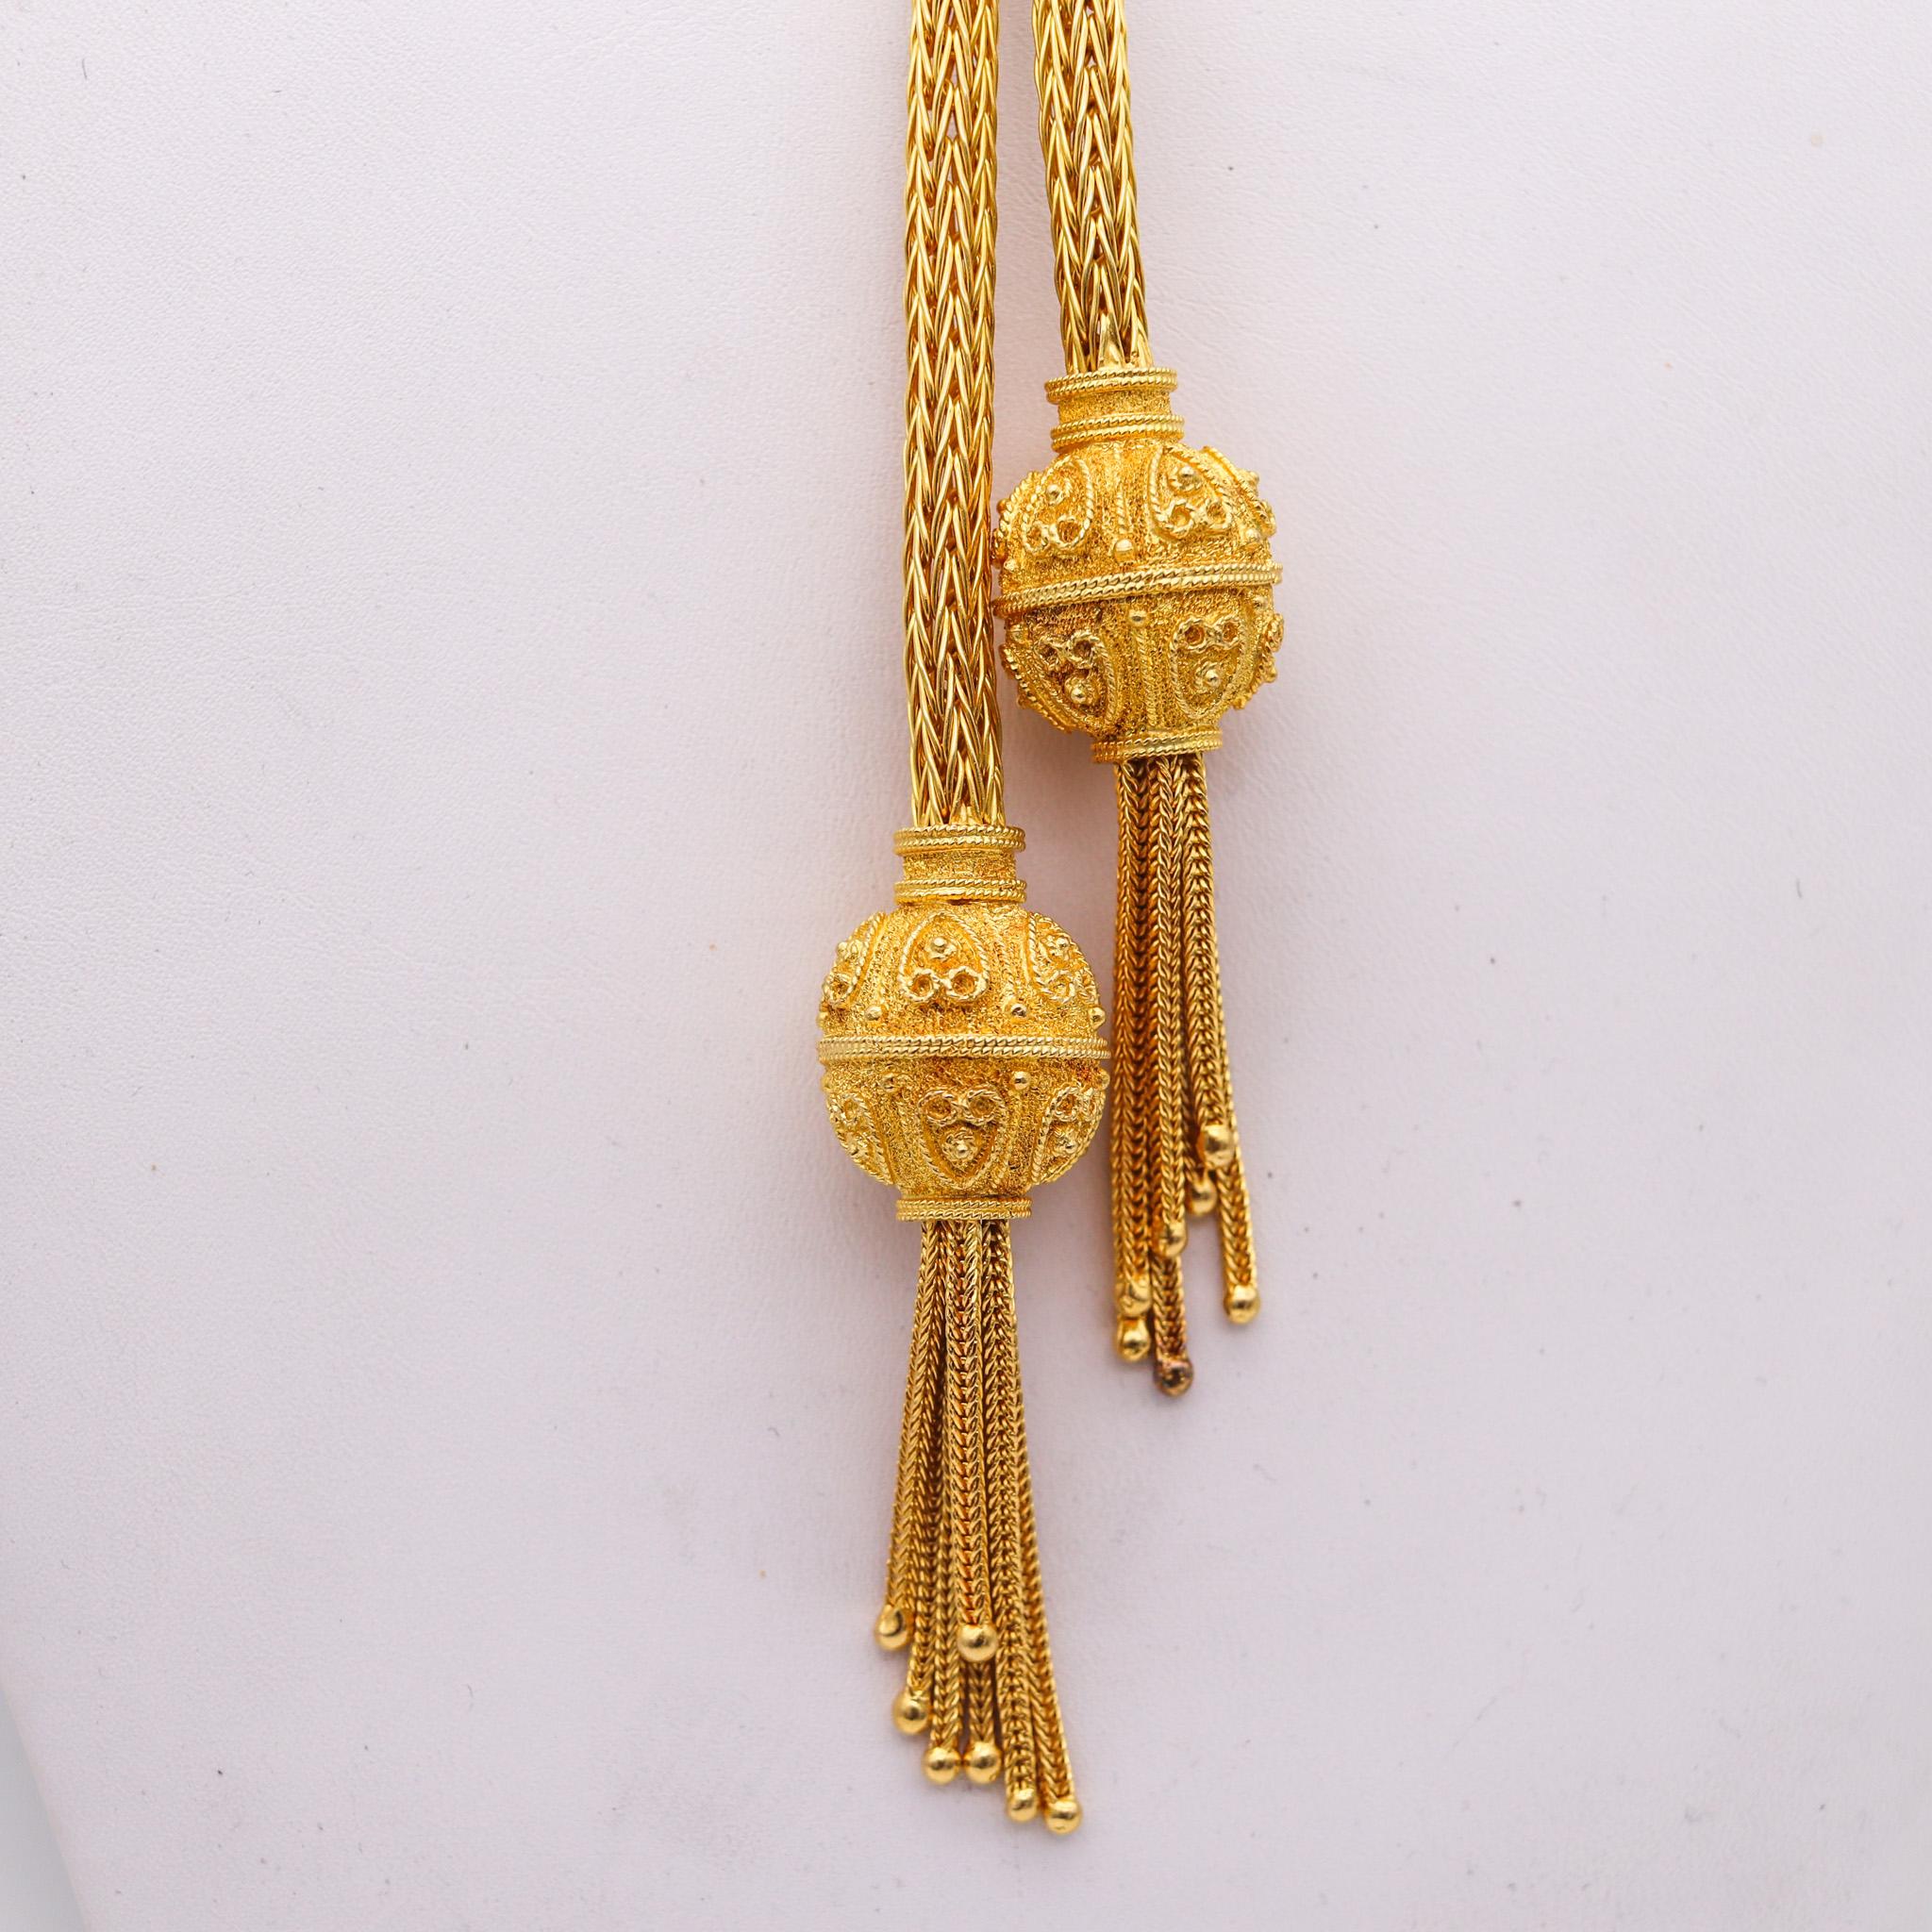 Collier Sautoir conçu par Zolotas.

Magnifique collier pendentif, créé en Grèce par la maison de joaillerie Zolotas à la fin du XXe siècle. Cet élégant collier est constitué d'un maillage de fils en or jaune massif de 18 carats. Conçu avec deux